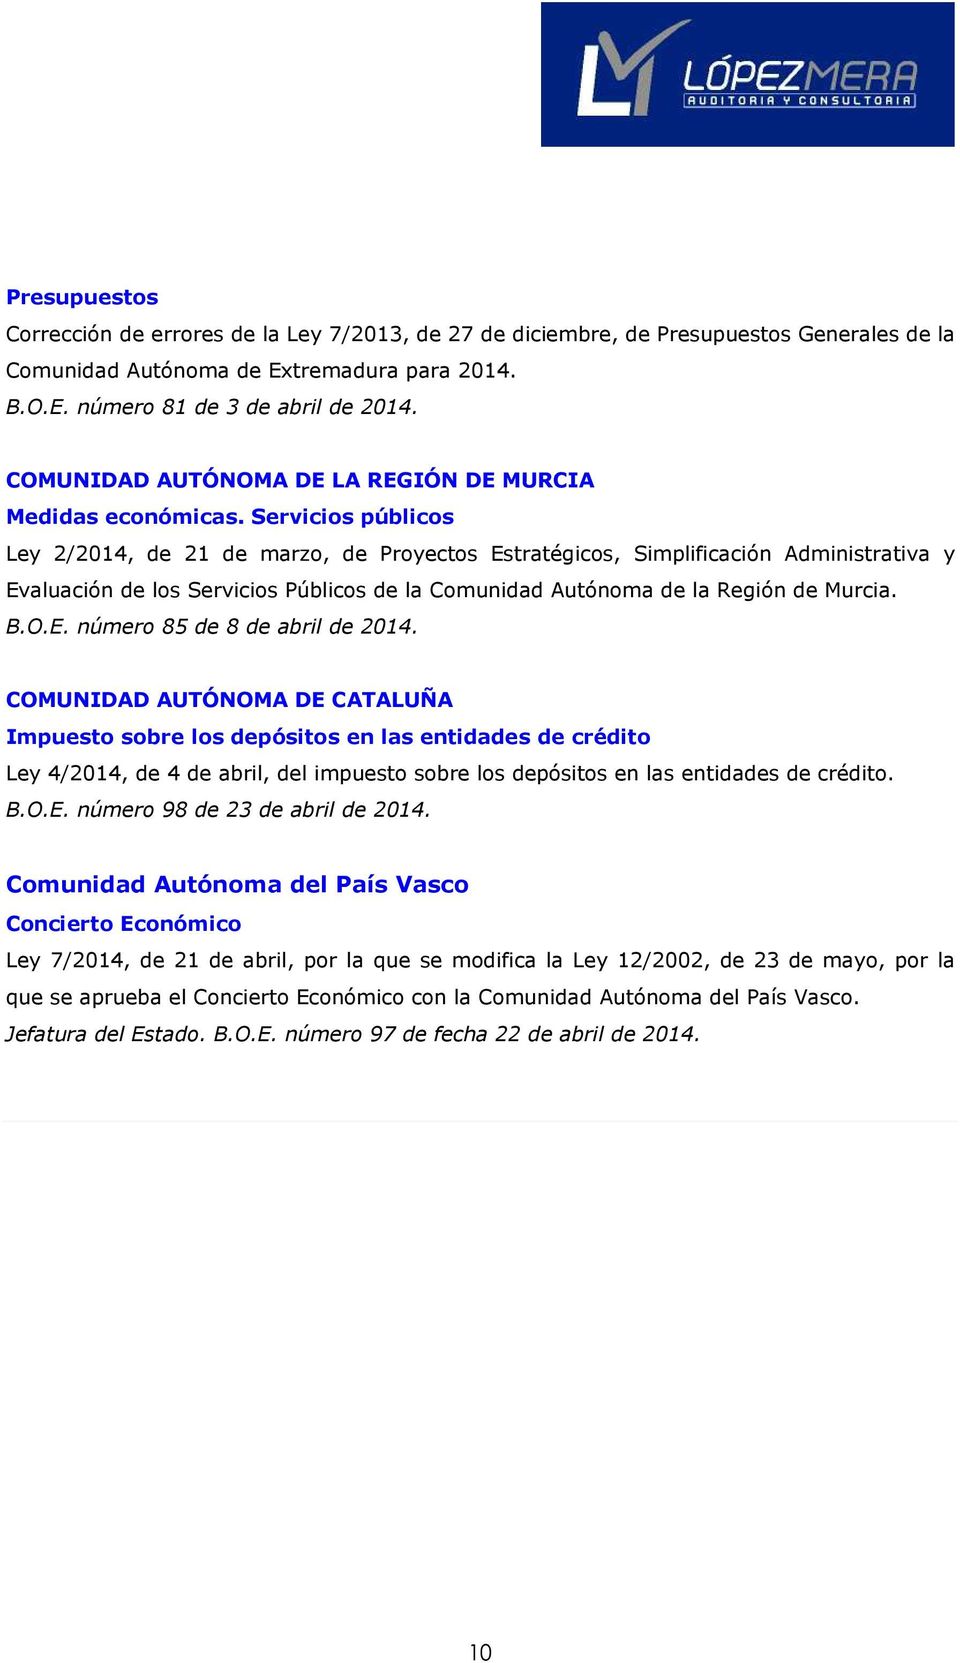 Servicios públicos Ley 2/2014, de 21 de marzo, de Proyectos Estratégicos, Simplificación Administrativa y Evaluación de los Servicios Públicos de la Comunidad Autónoma de la Región de Murcia. B.O.E. número 85 de 8 de abril de 2014.